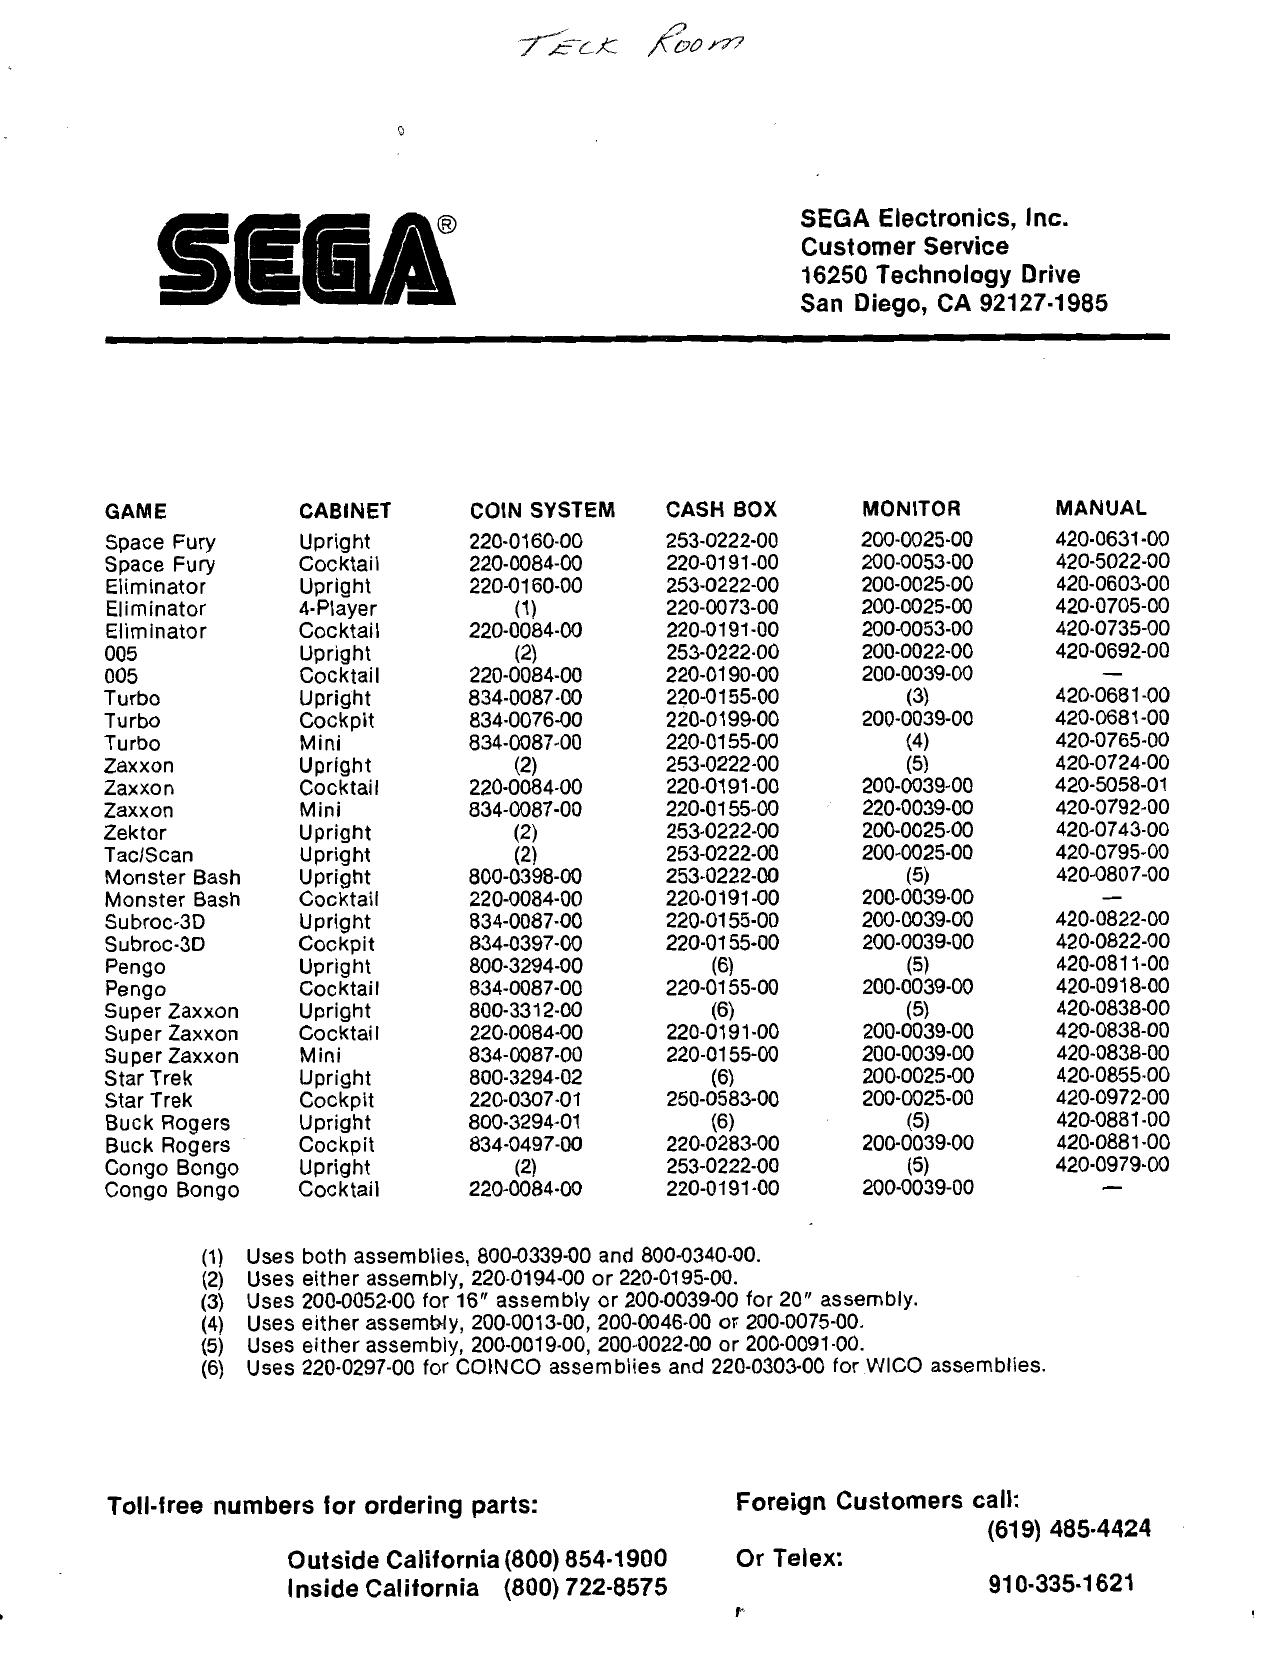 Sega Parts Numbers